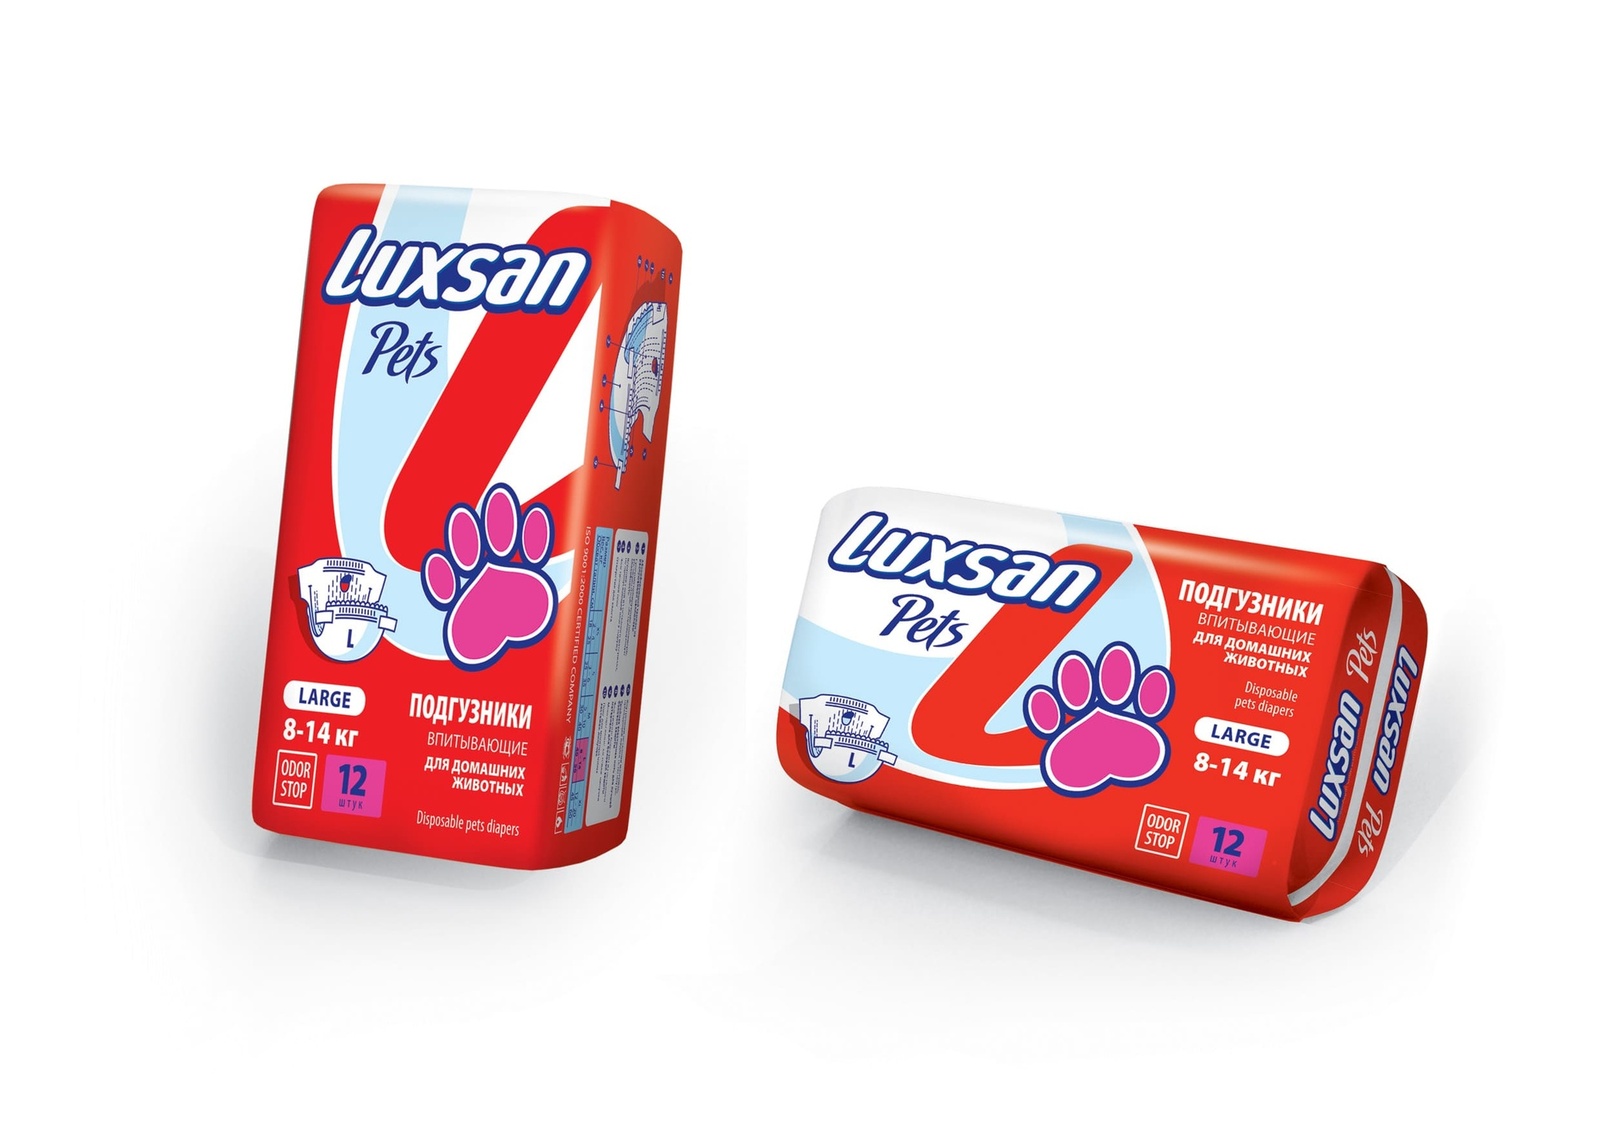 Luxsan Luxsan подгузники для животных: 8-14 кг, 12 шт. (340 г) стельки corbby odor stop black латексн пена нетканый матер безразм с актив углём от запаха